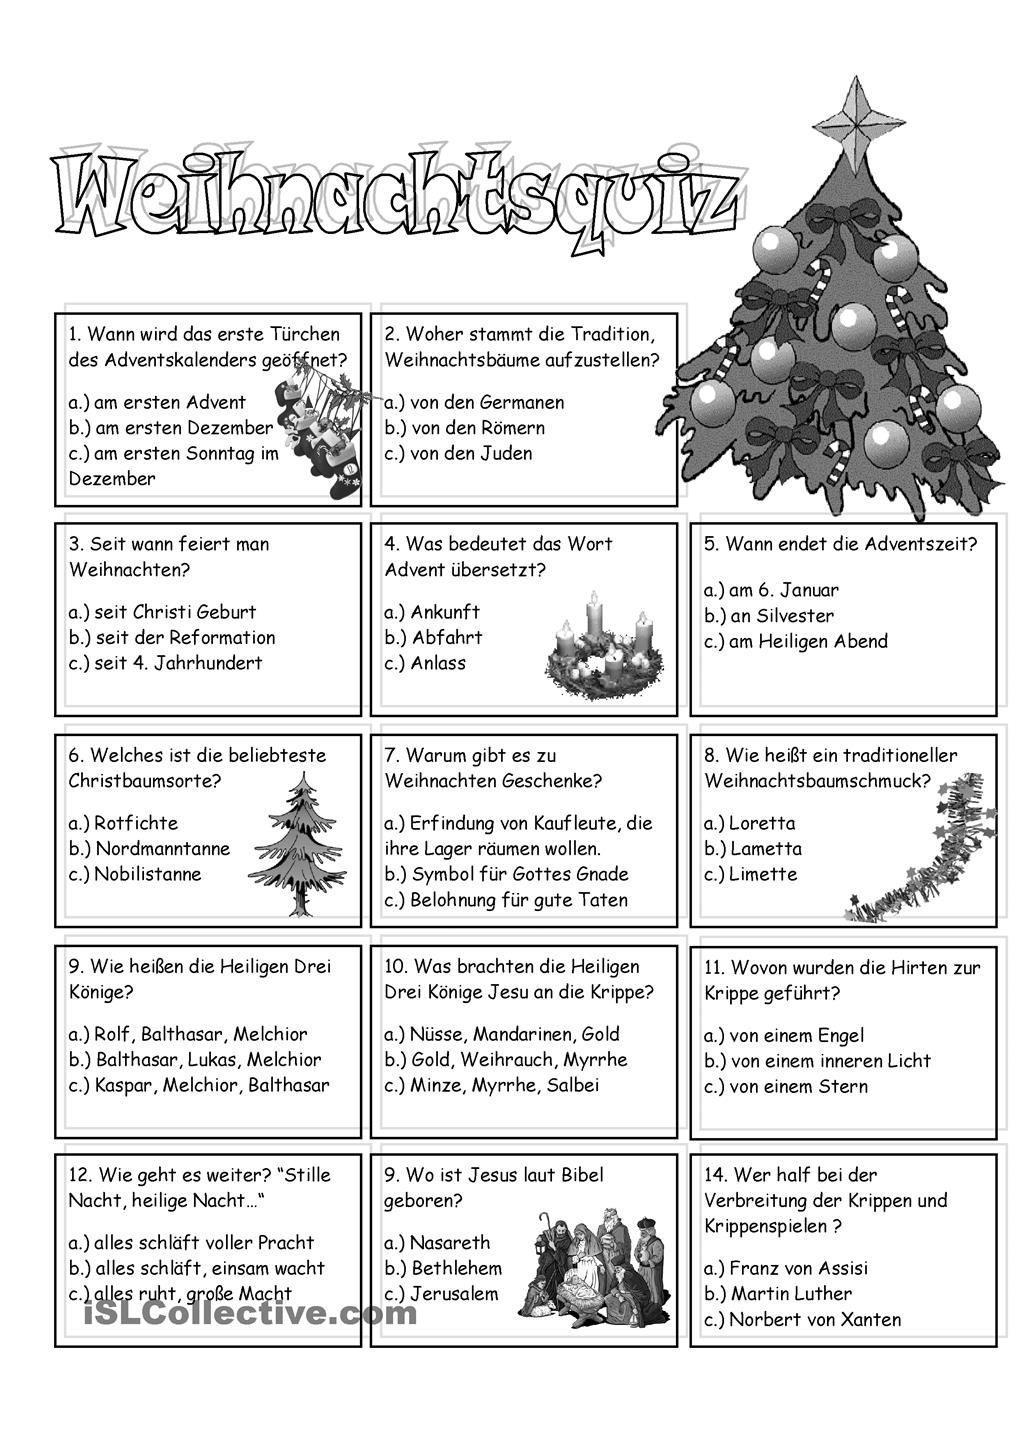 Weihnachtsquiz (Mit Bildern) | Weihnachten Rätsel für Weihnachtsquiz Lustiges Mit Lösungen Zum Ausdrucken